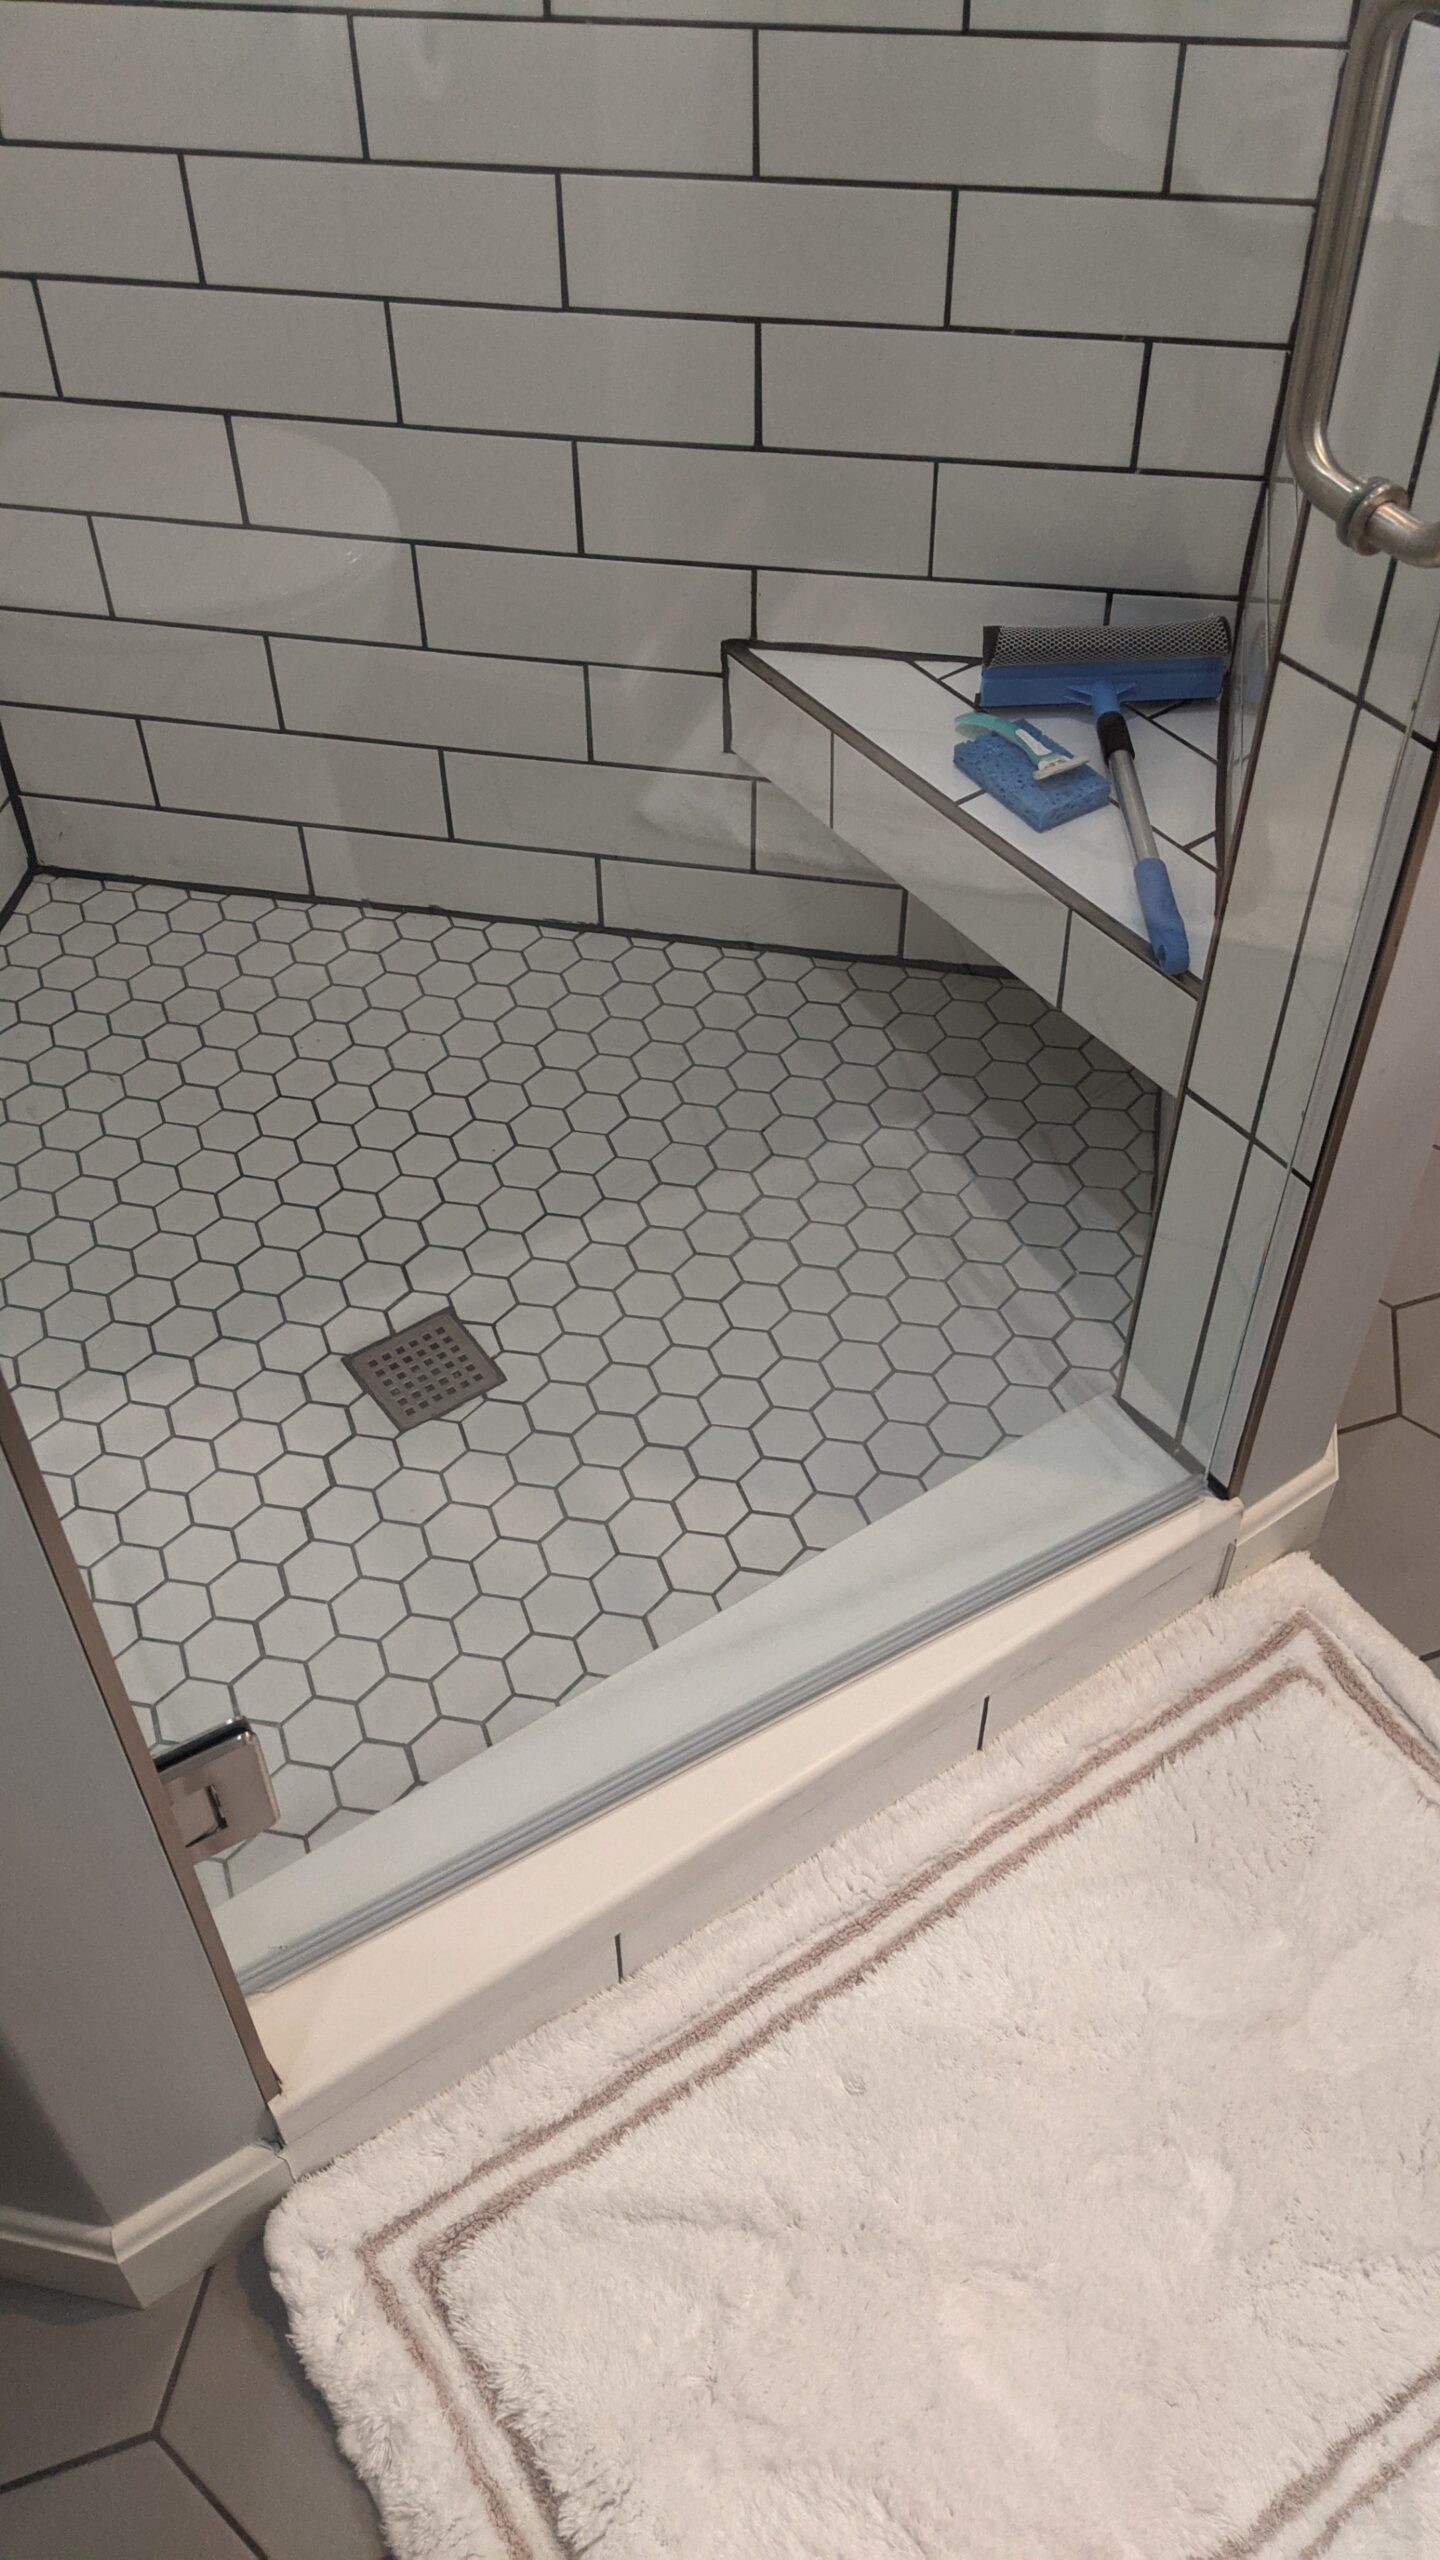 Inside shower floor, hex shaped tiles.